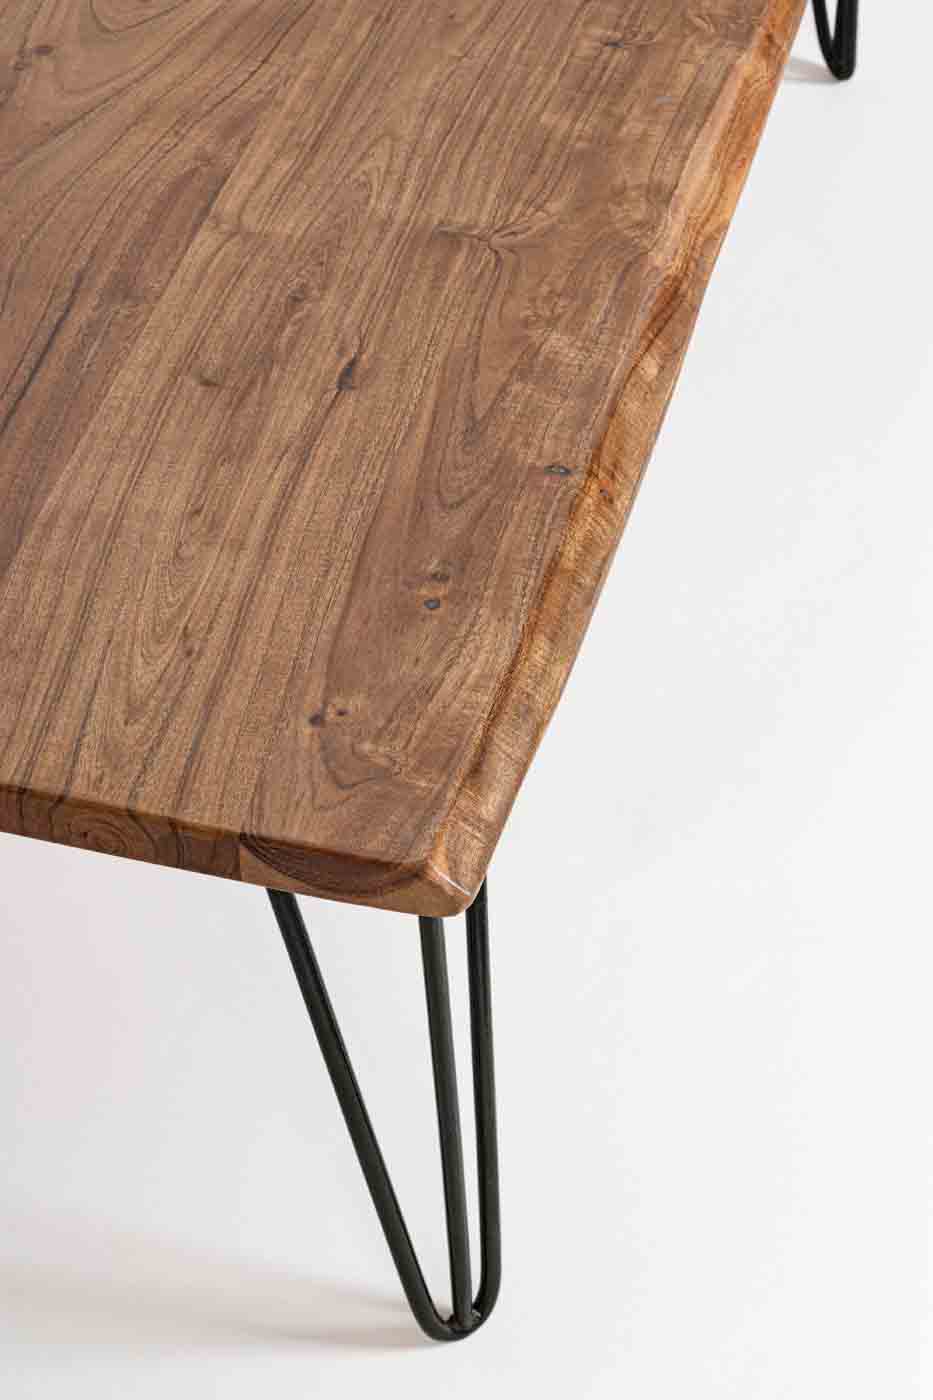 Die Tischplatte des Beistelltisches Barrow wurde aus Akazienholz gefertigt. Durch die Verwendung von Naturmaterialien ist jeder Tisch individuell. Das Gestell ist aus Stahl.